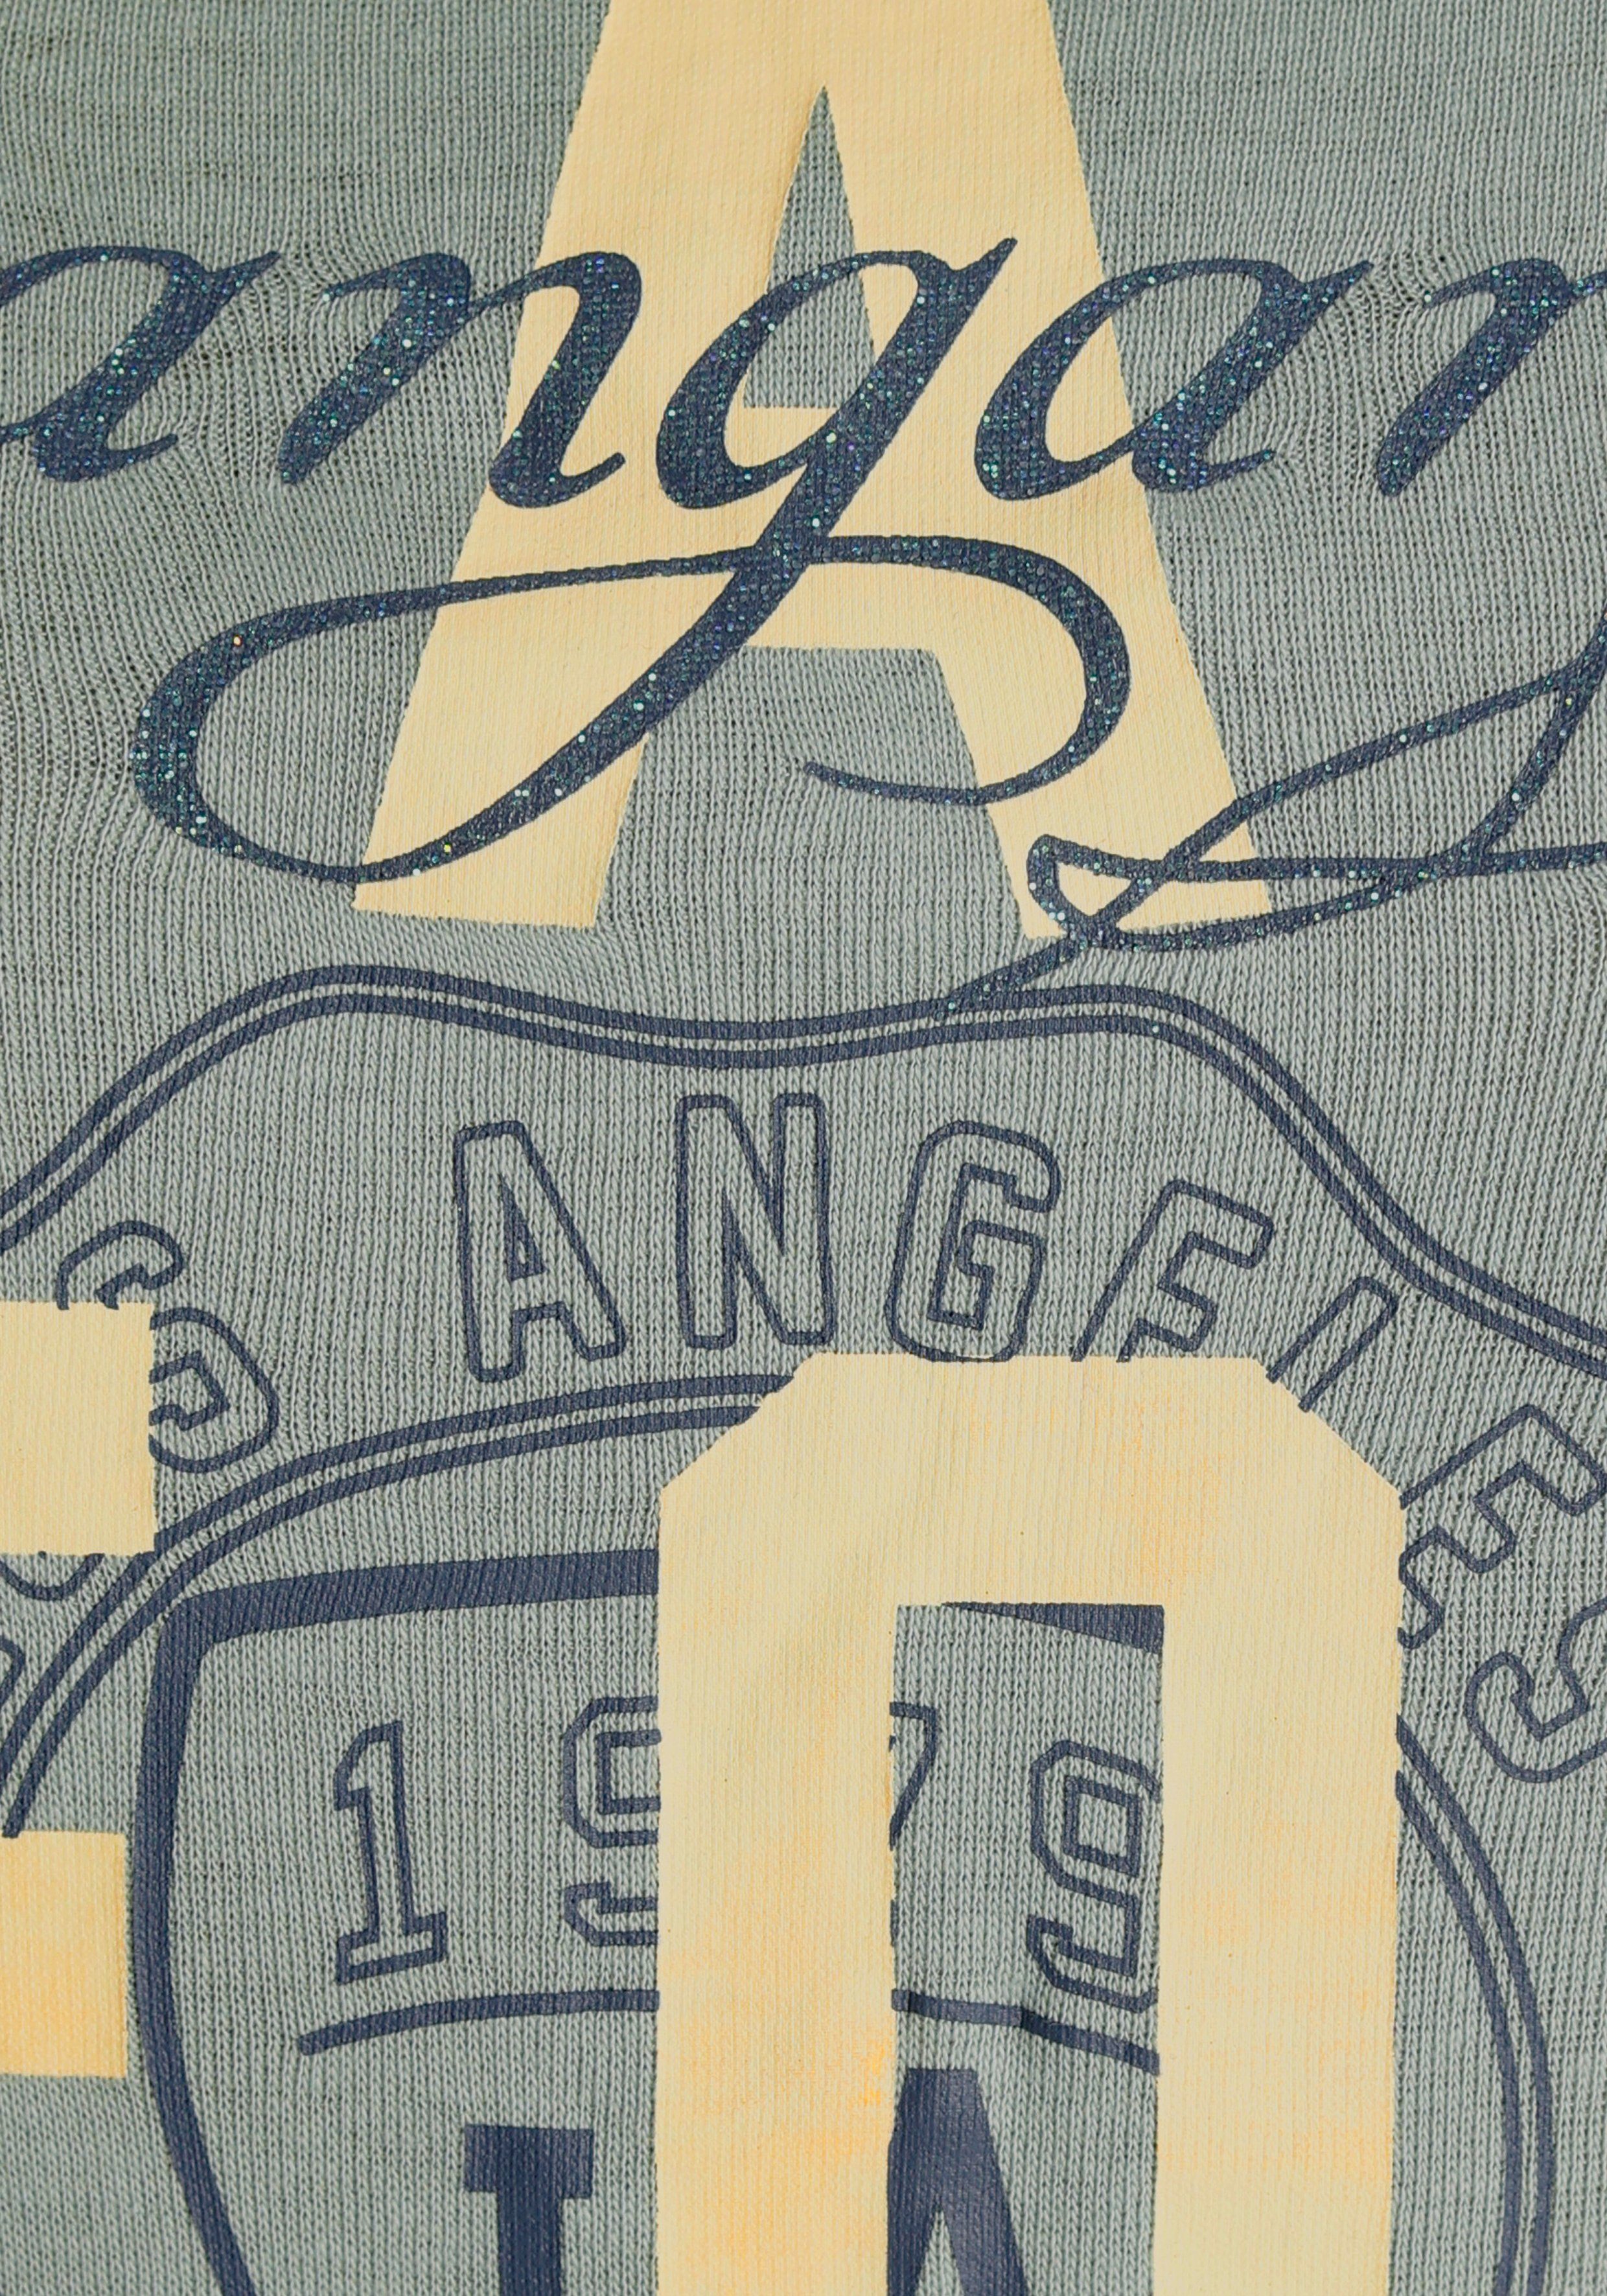 im KangaROOS - California-Style khakigrau mit Logodruck KOLLEKTION Print-Shirt NEUE